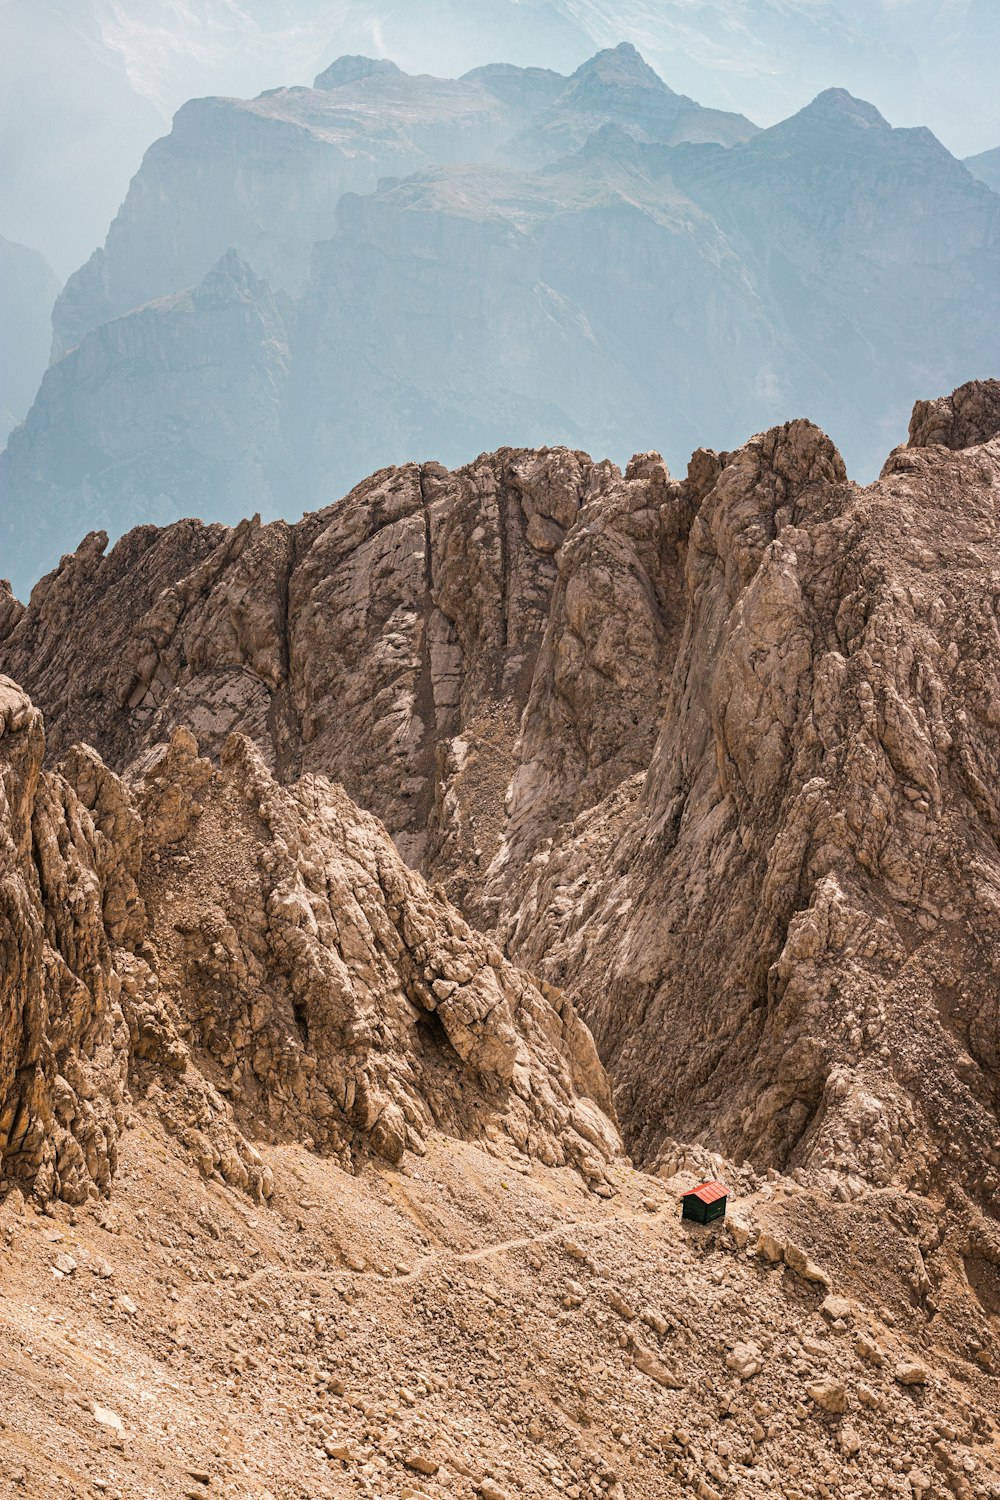 a person climbing a mountain